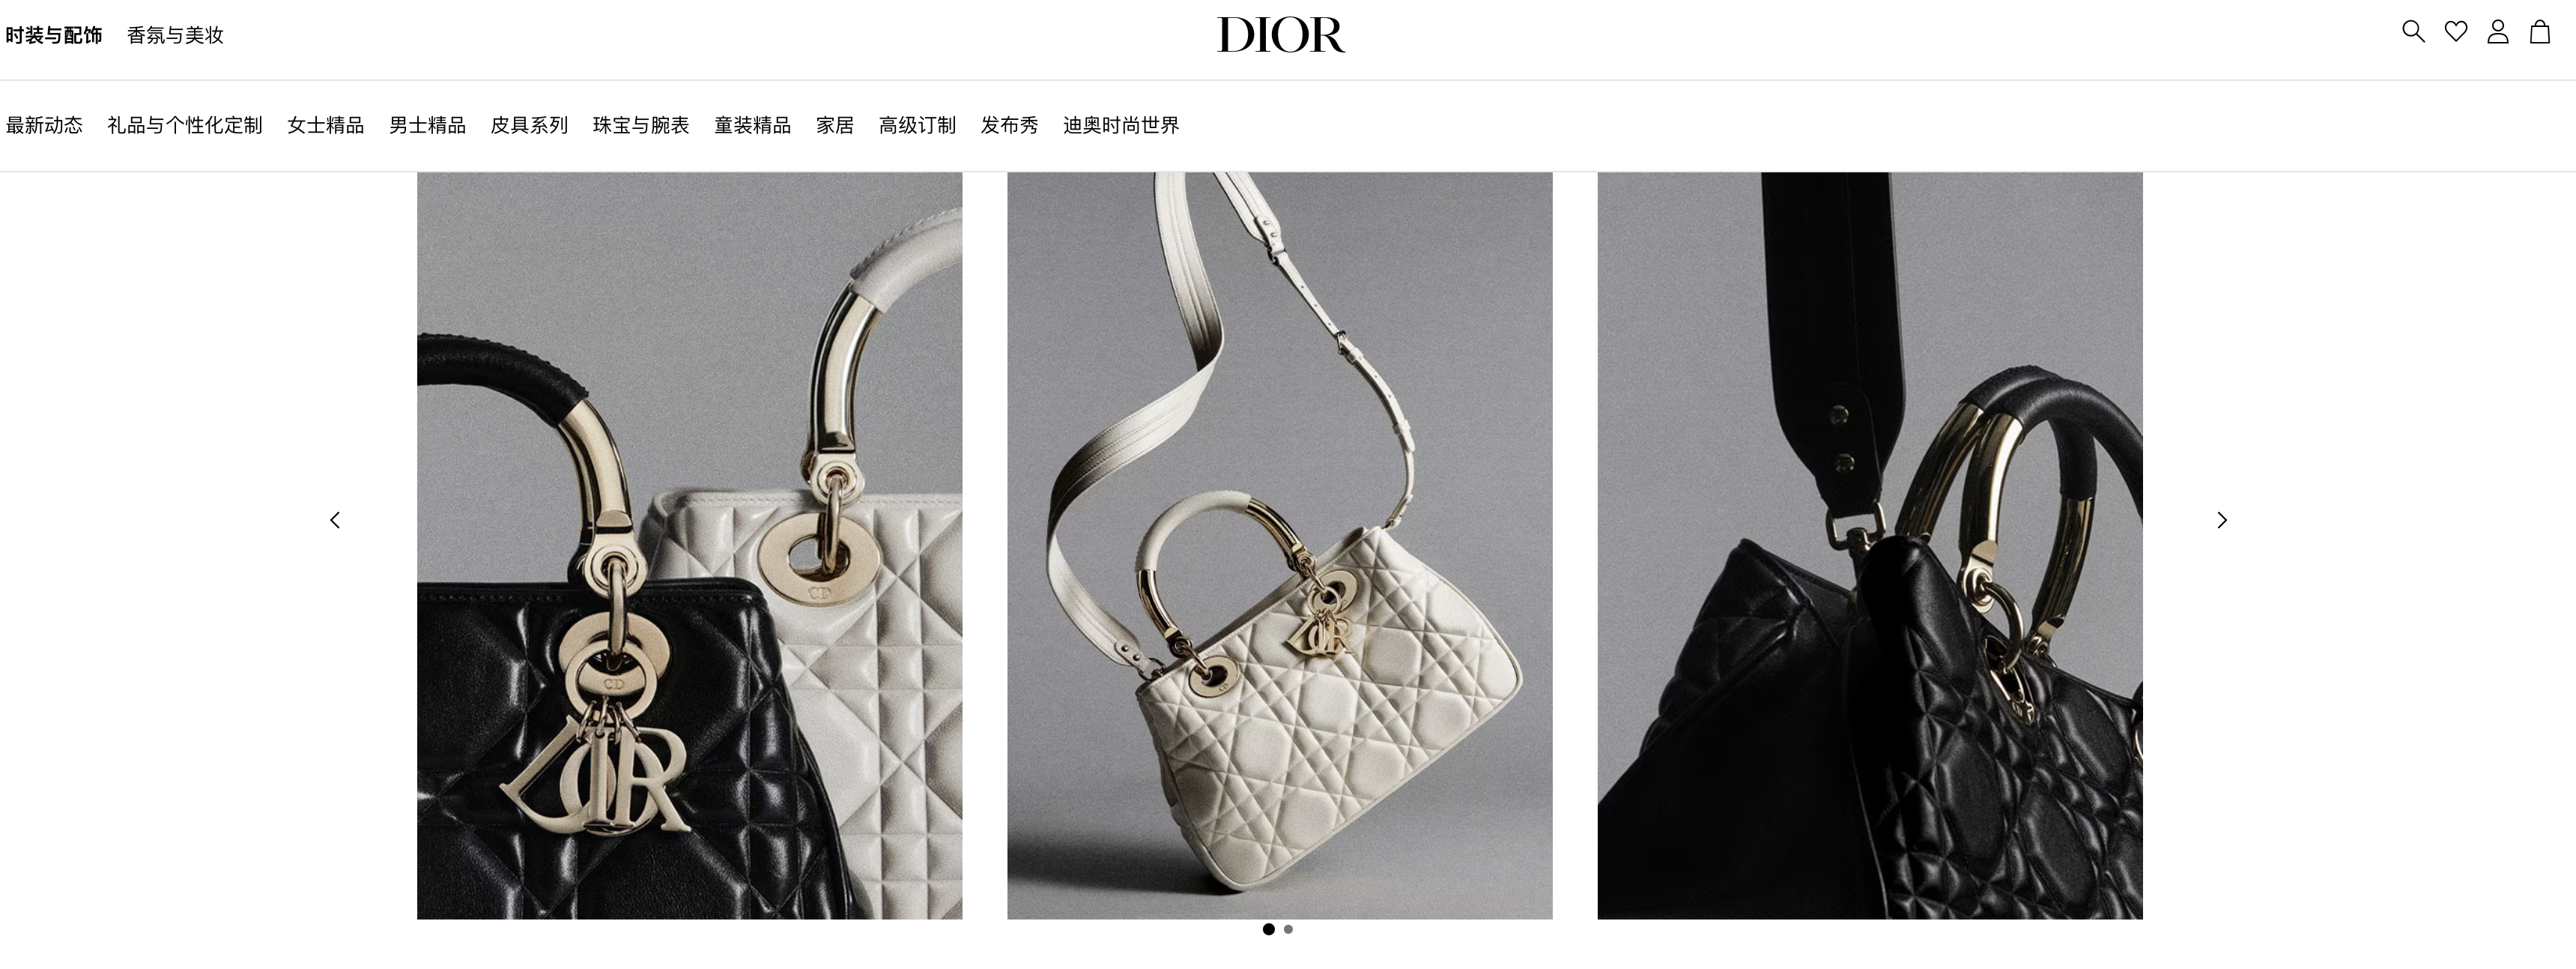 传：Dior 将在意大利 Scandicci 皮具区新增一家手袋工厂